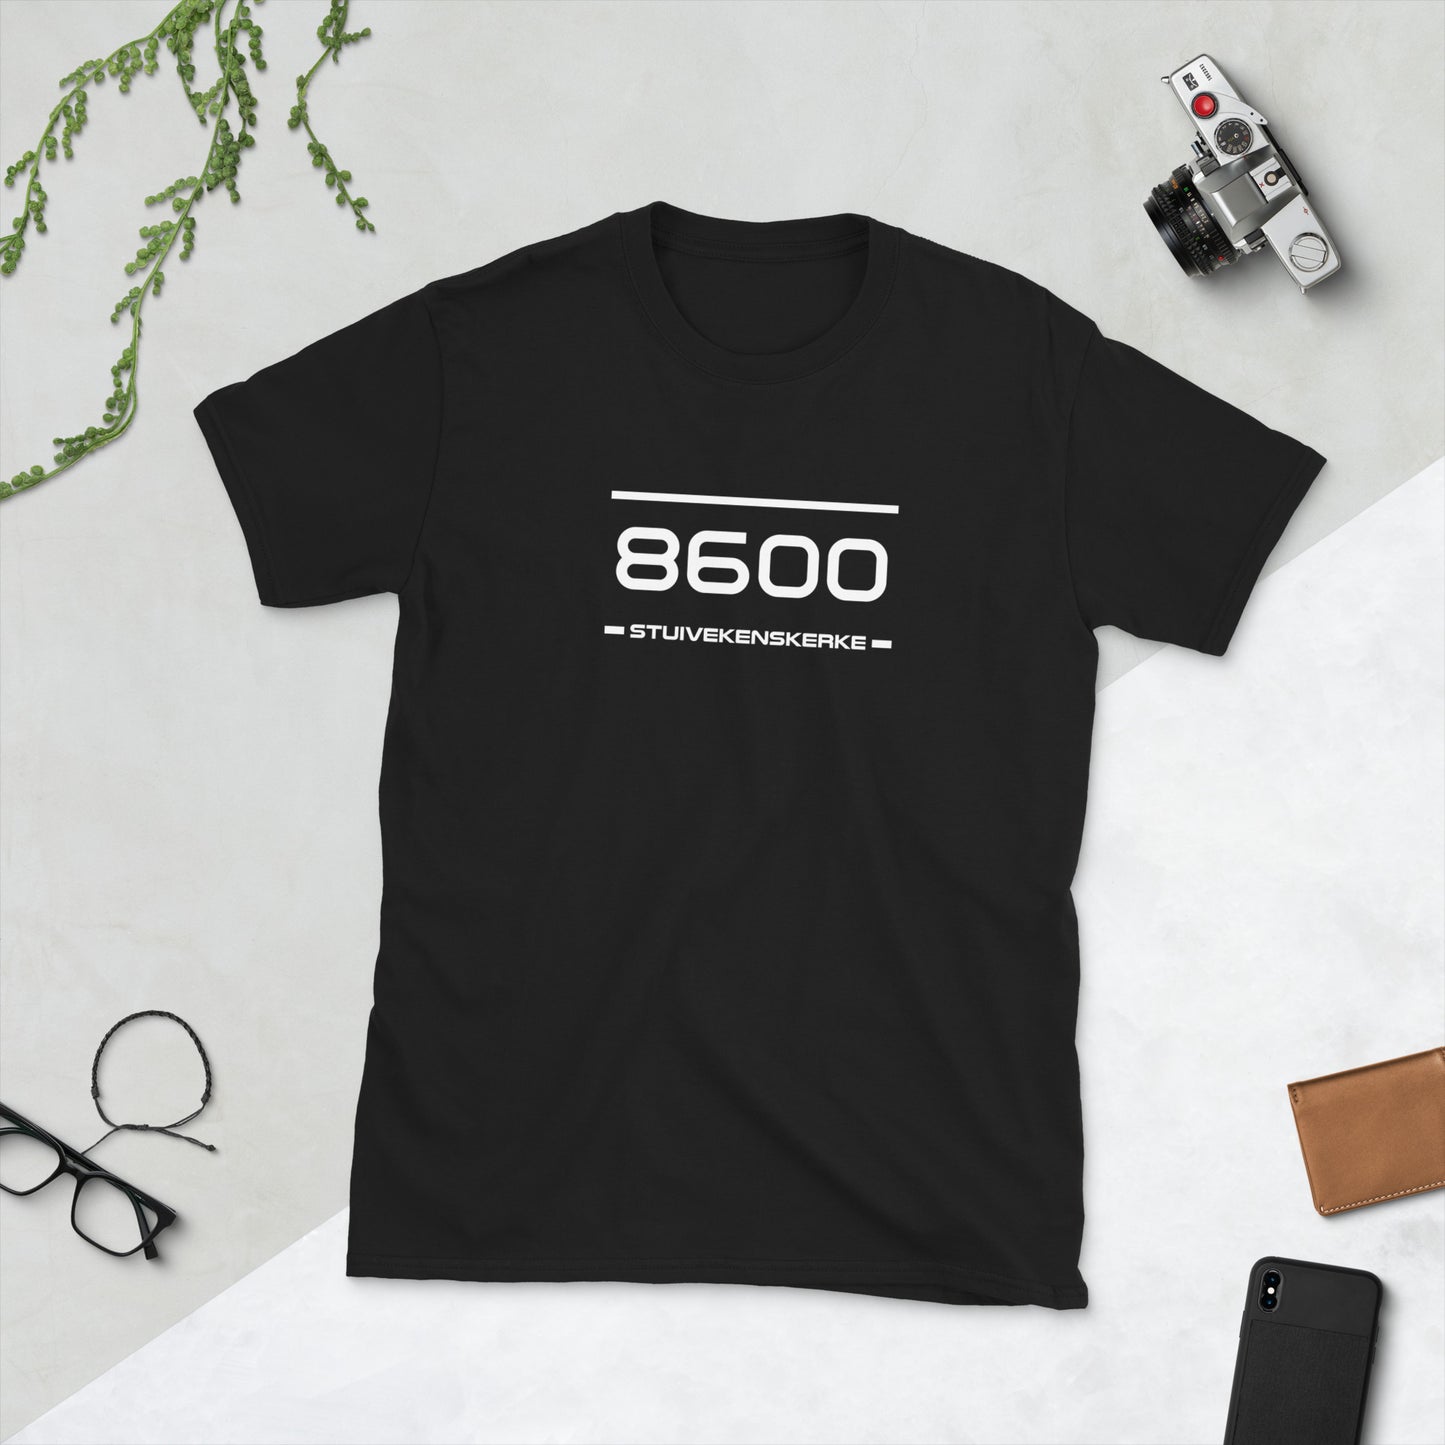 Tshirt - 8600 - Stuivekenskerke